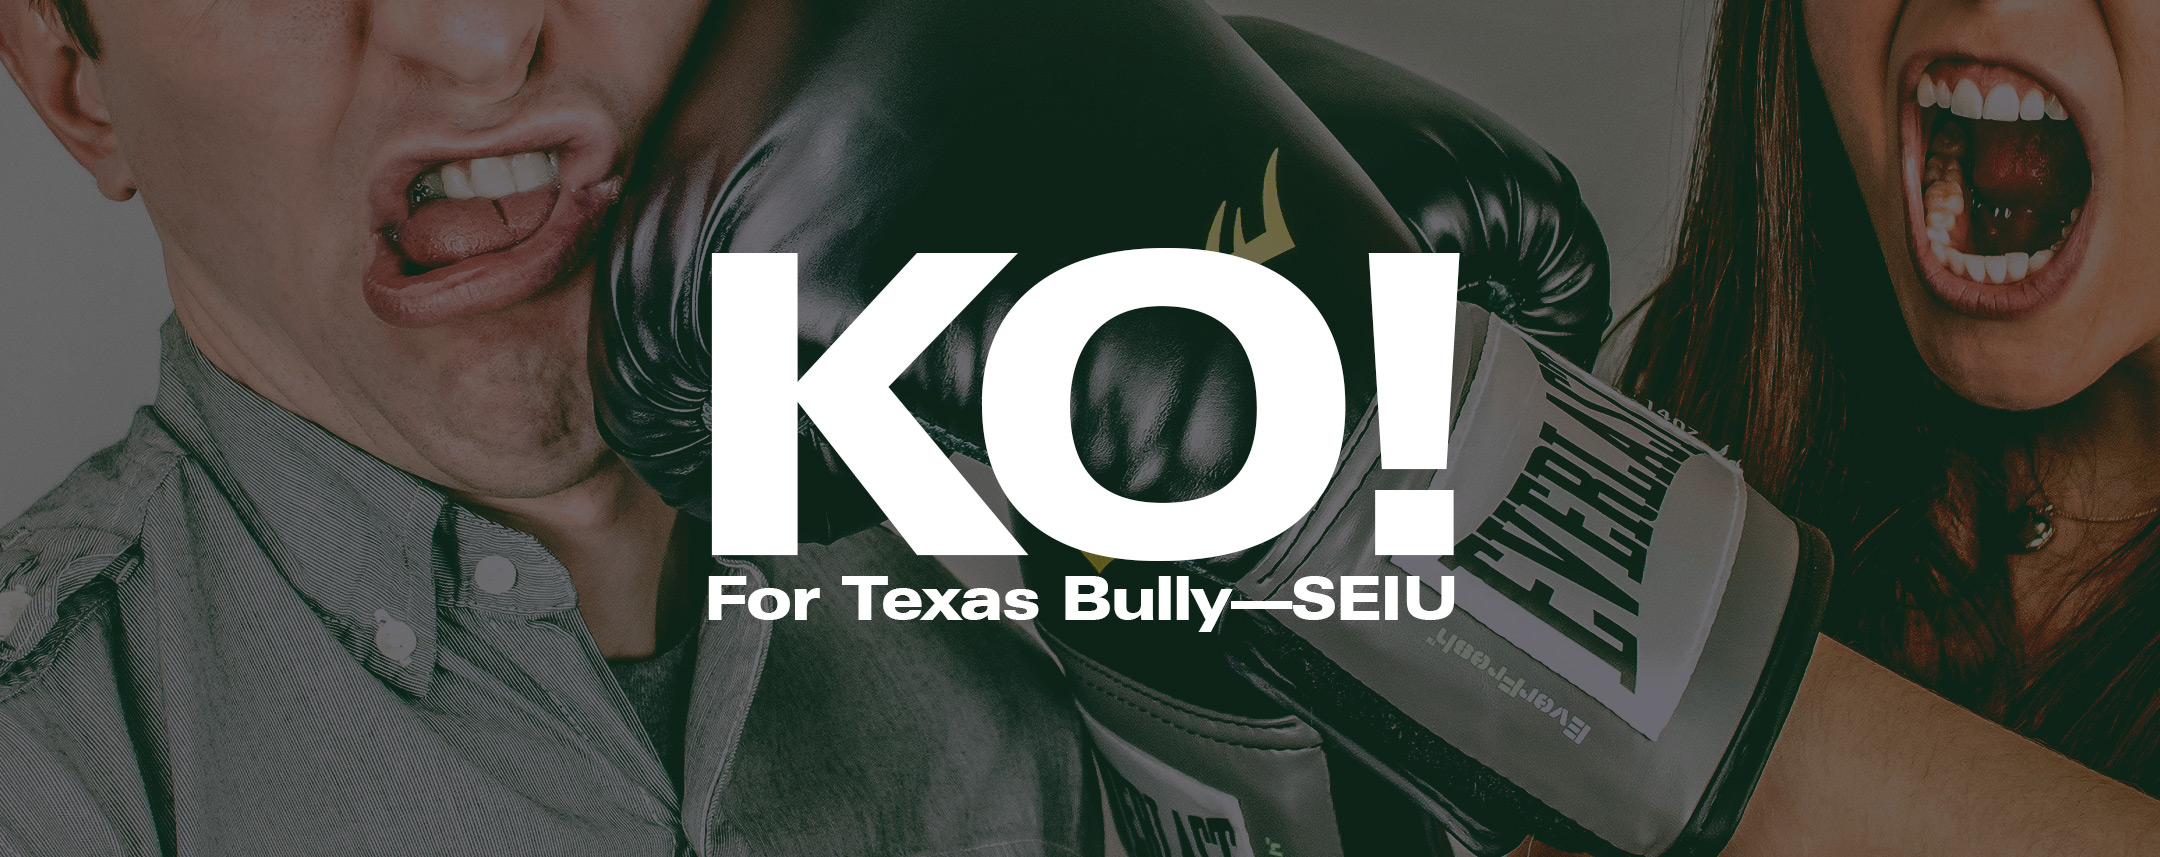 KO-Texas-bully-SEIU-FEATURED.jpg